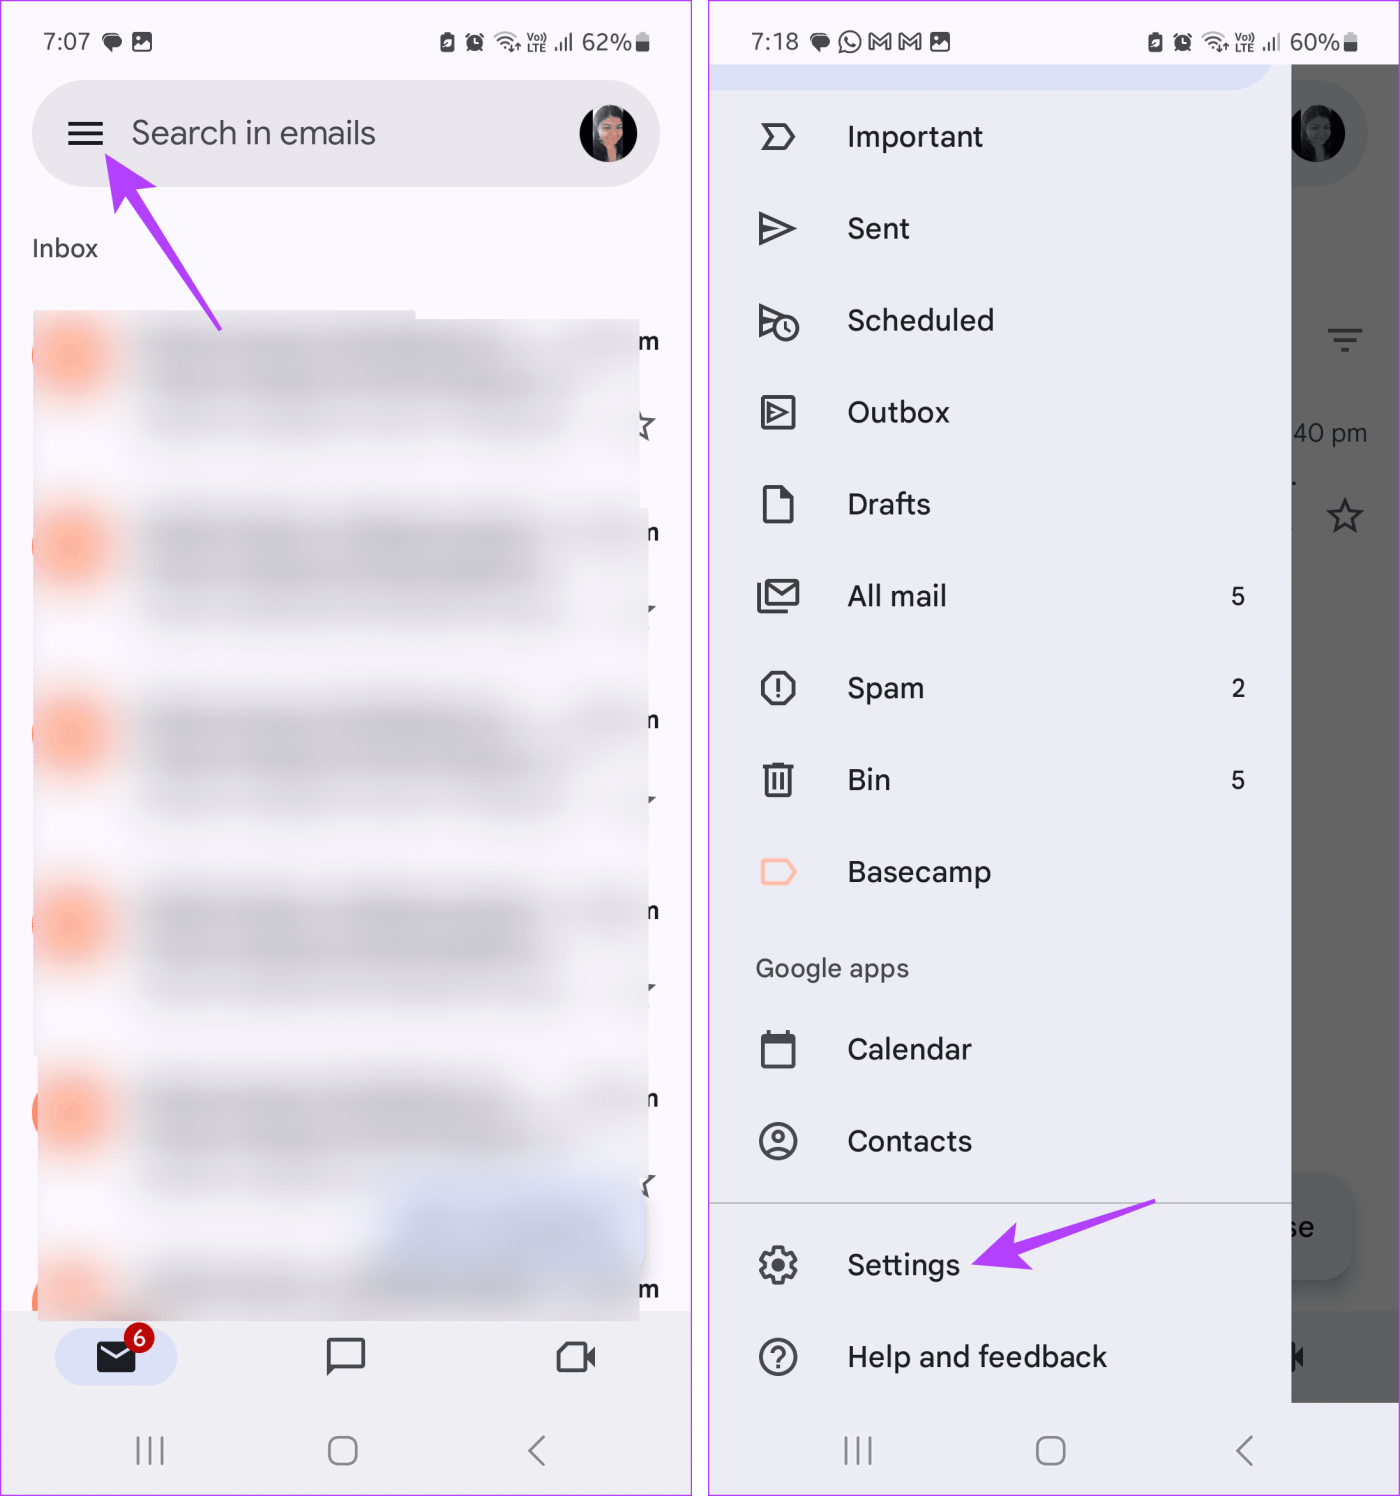 Comment utiliser Snooze dans Gmail sur mobile et ordinateur de bureau